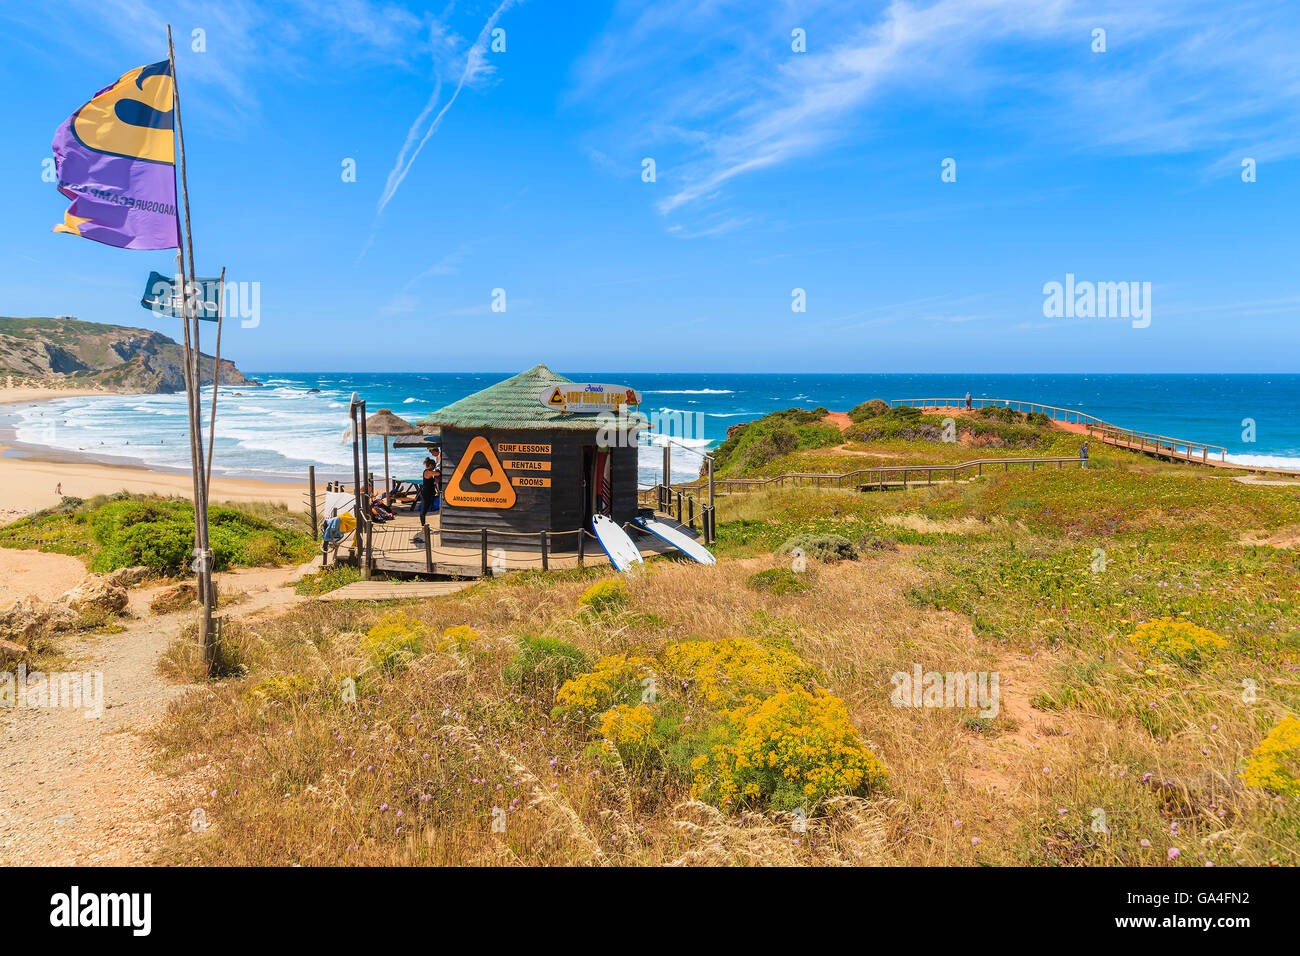 PRAIA DO AMADO Beach, Portogallo - 15 Maggio 2015: scuola di surf booth su una spiaggia bellissima nel regione Algarve. Il surf è lo sport popolare nel sud-ovest del Portogallo a causa di frequenti forti venti qui. Foto Stock